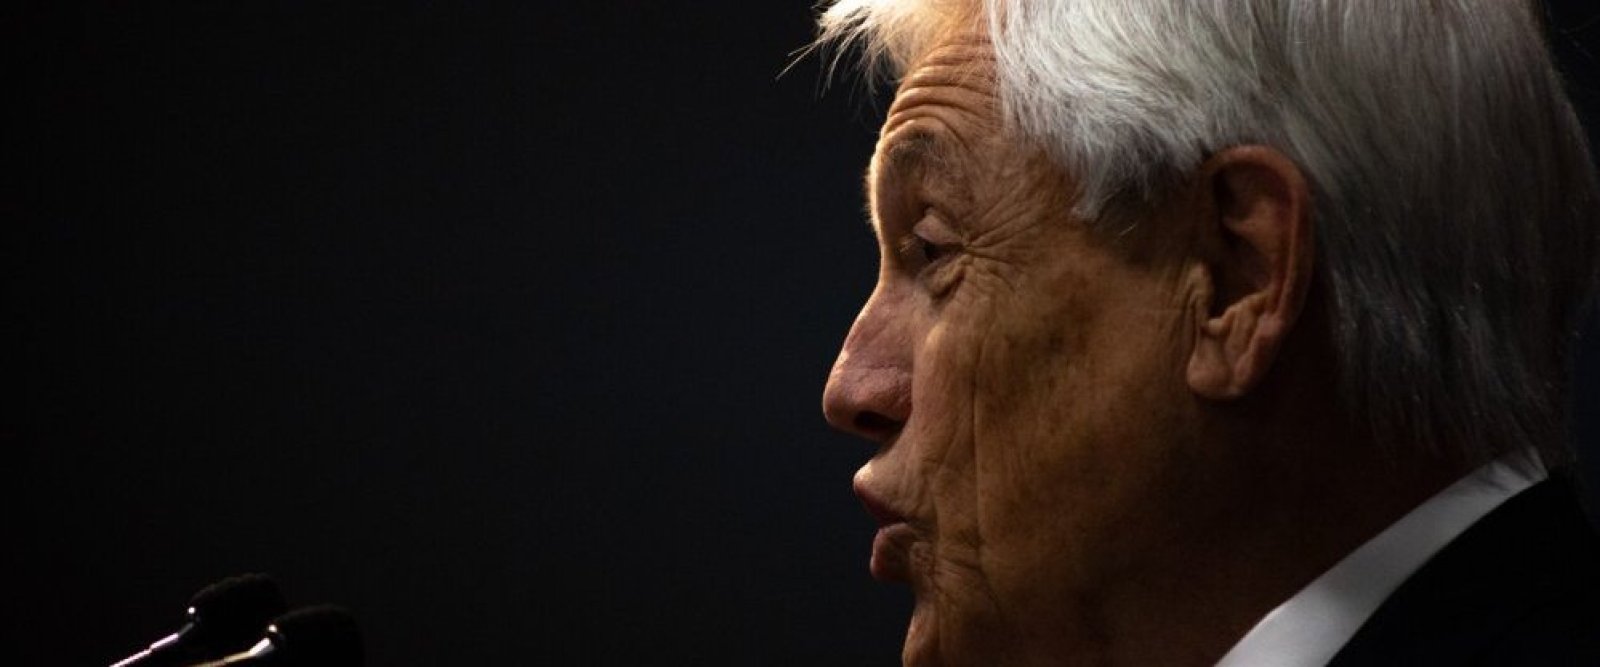 Estallido social: Expresidente Piñera asegura que sufrió un 